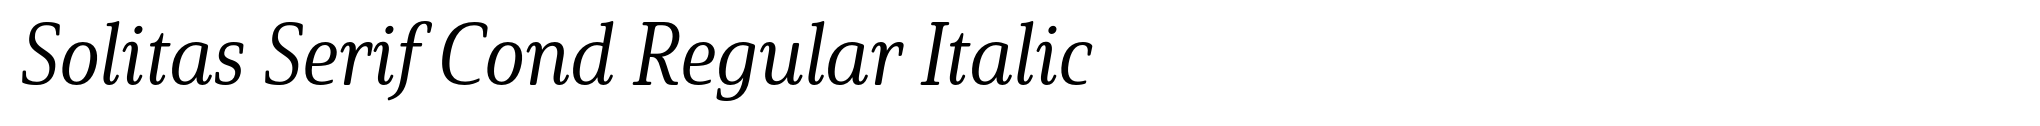 Solitas Serif Cond Regular Italic image